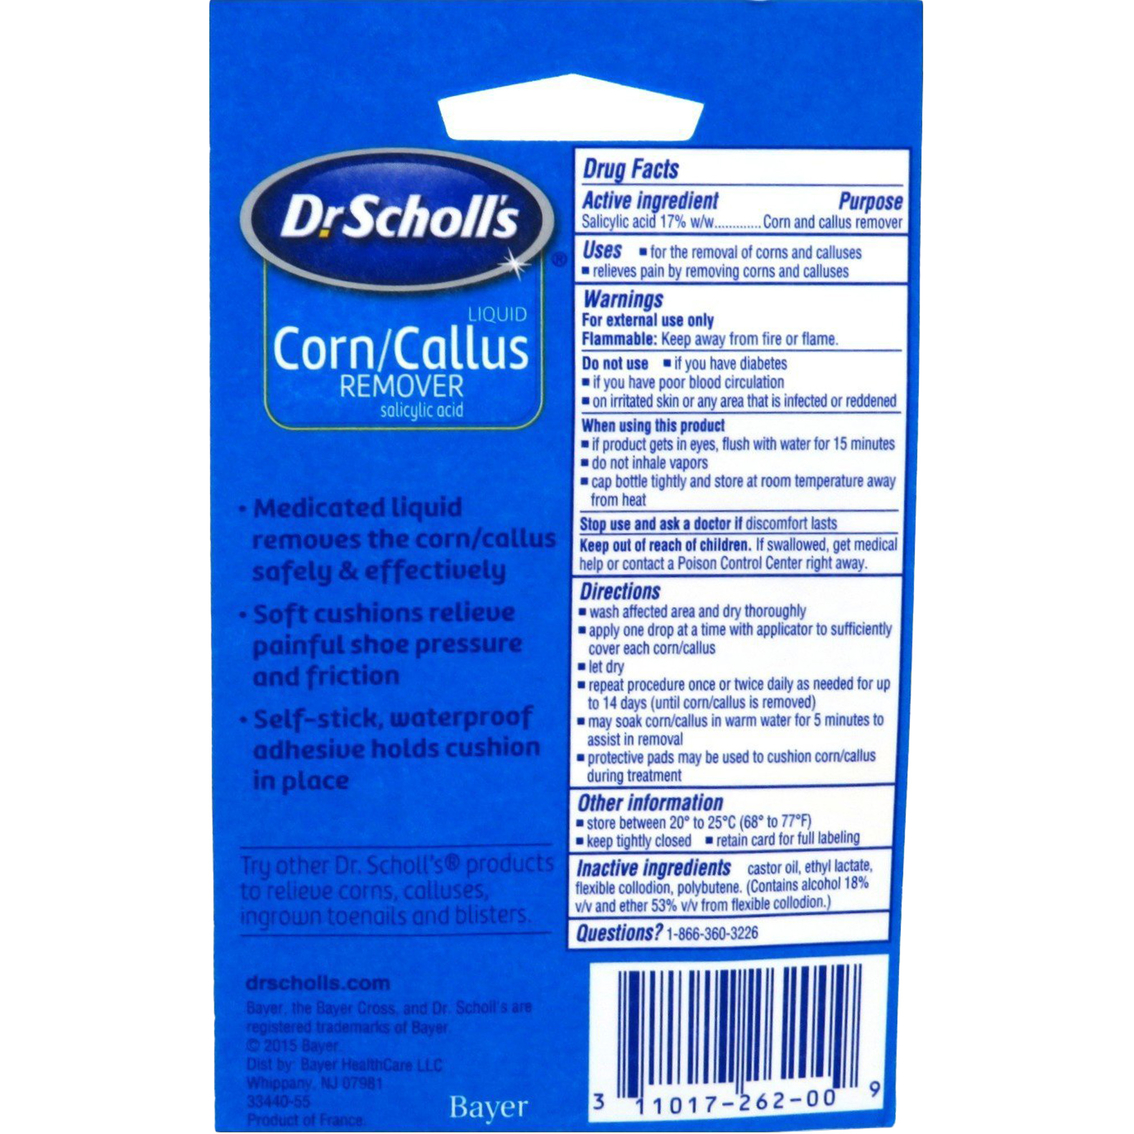 Dr. Scholl's Corn/Callus Remover Liquid - Image 2 of 2